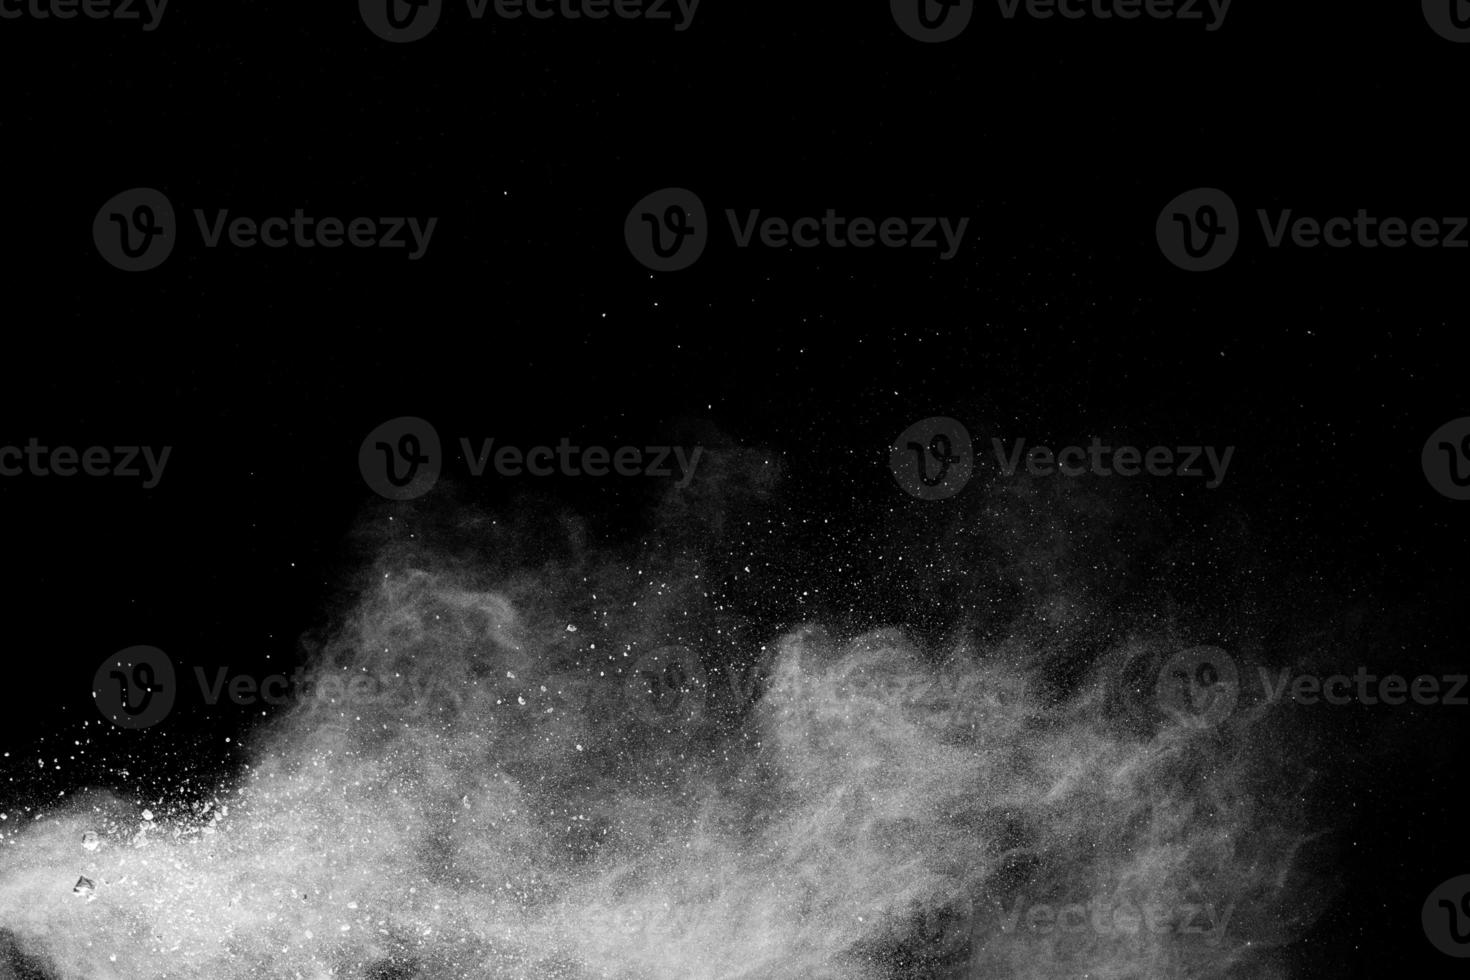 nuvem de explosão de pó branco contra fundo preto. respingo de partículas de poeira branca. foto